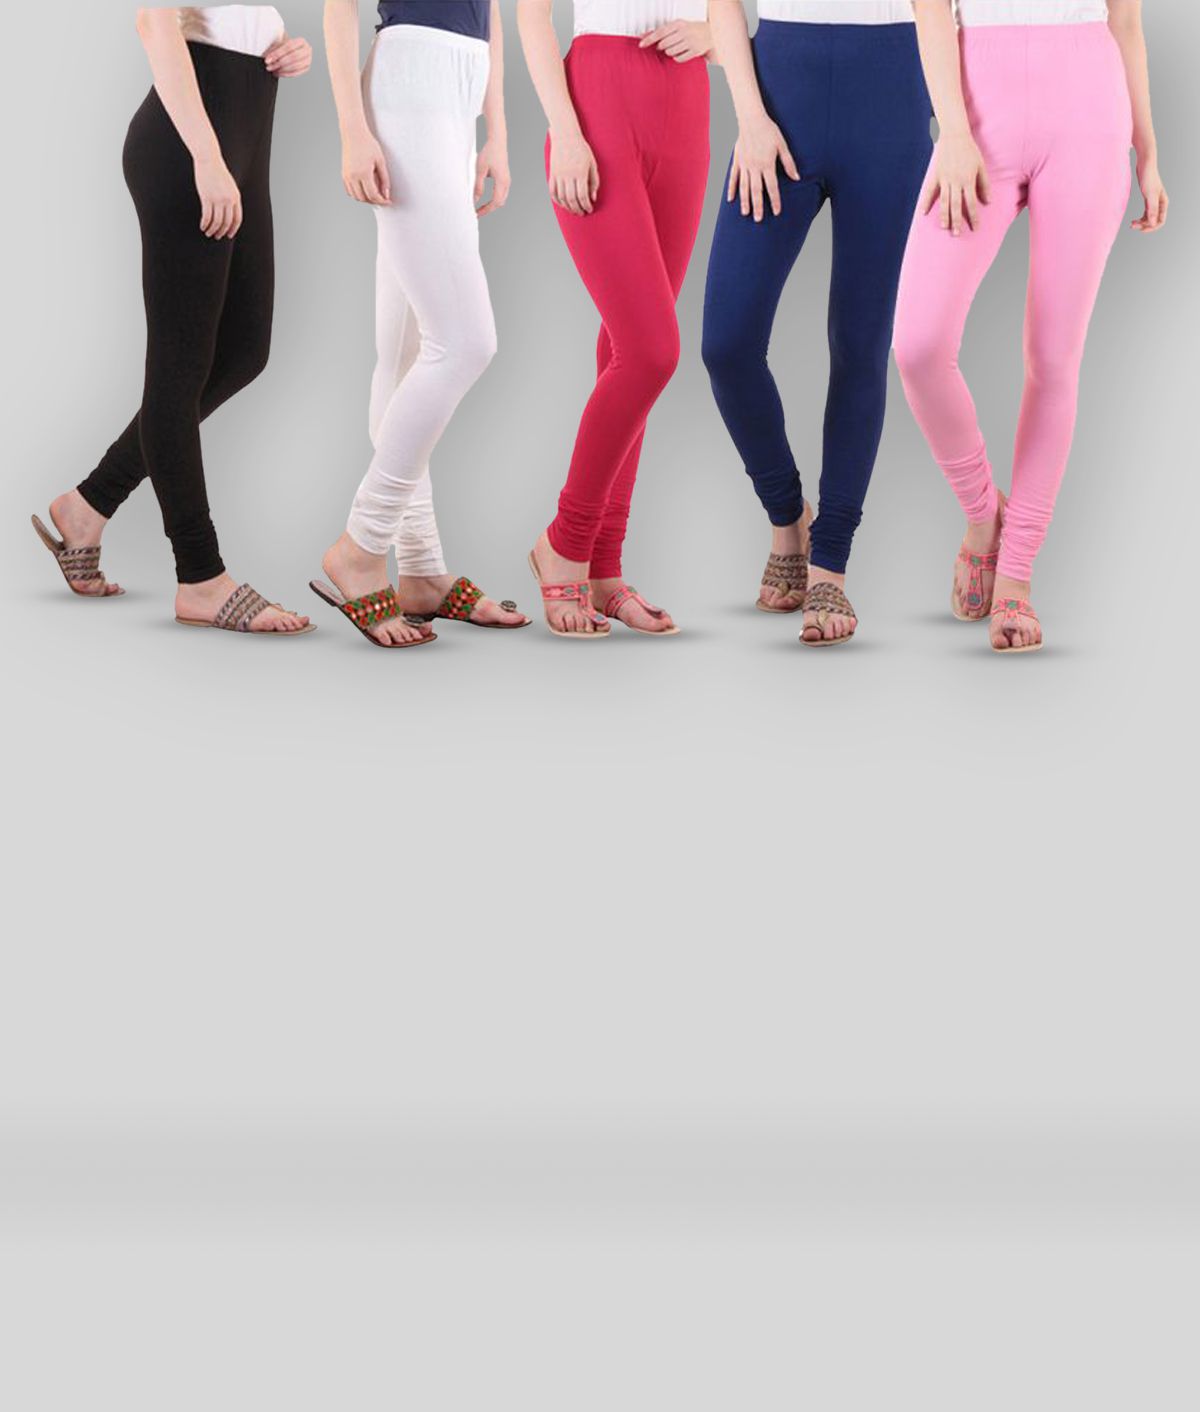 Diaz - Multicoloured Cotton Blend Women's Leggings ( Pack of 5 )